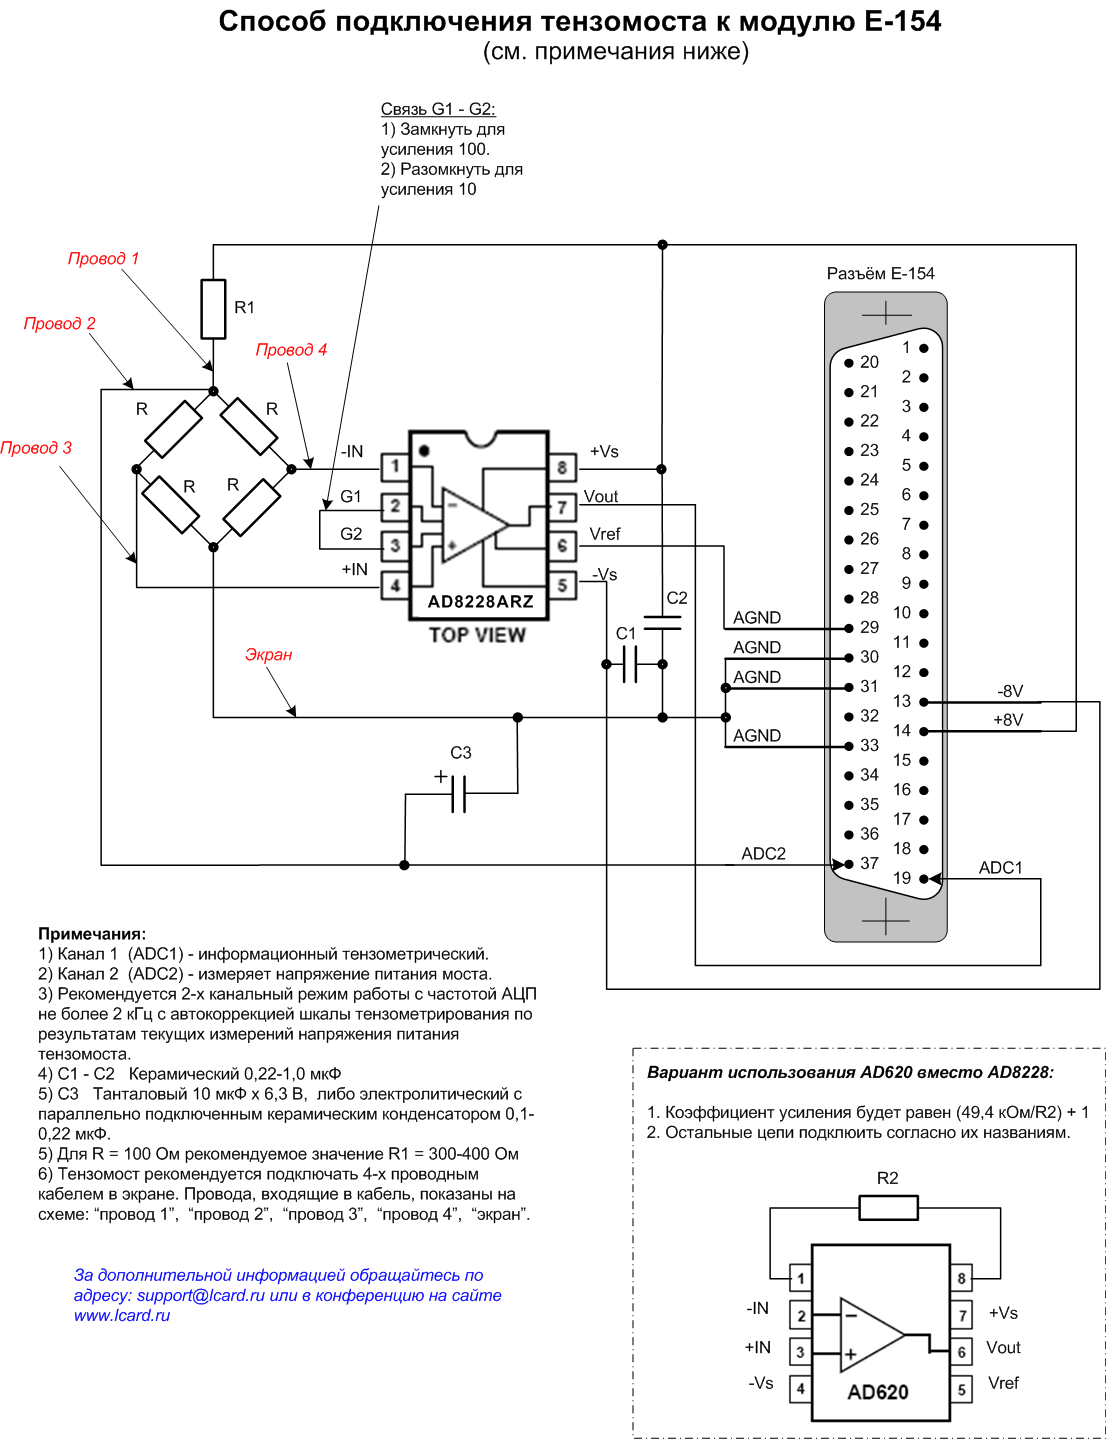 Подключение тензомоста к модулю E-154